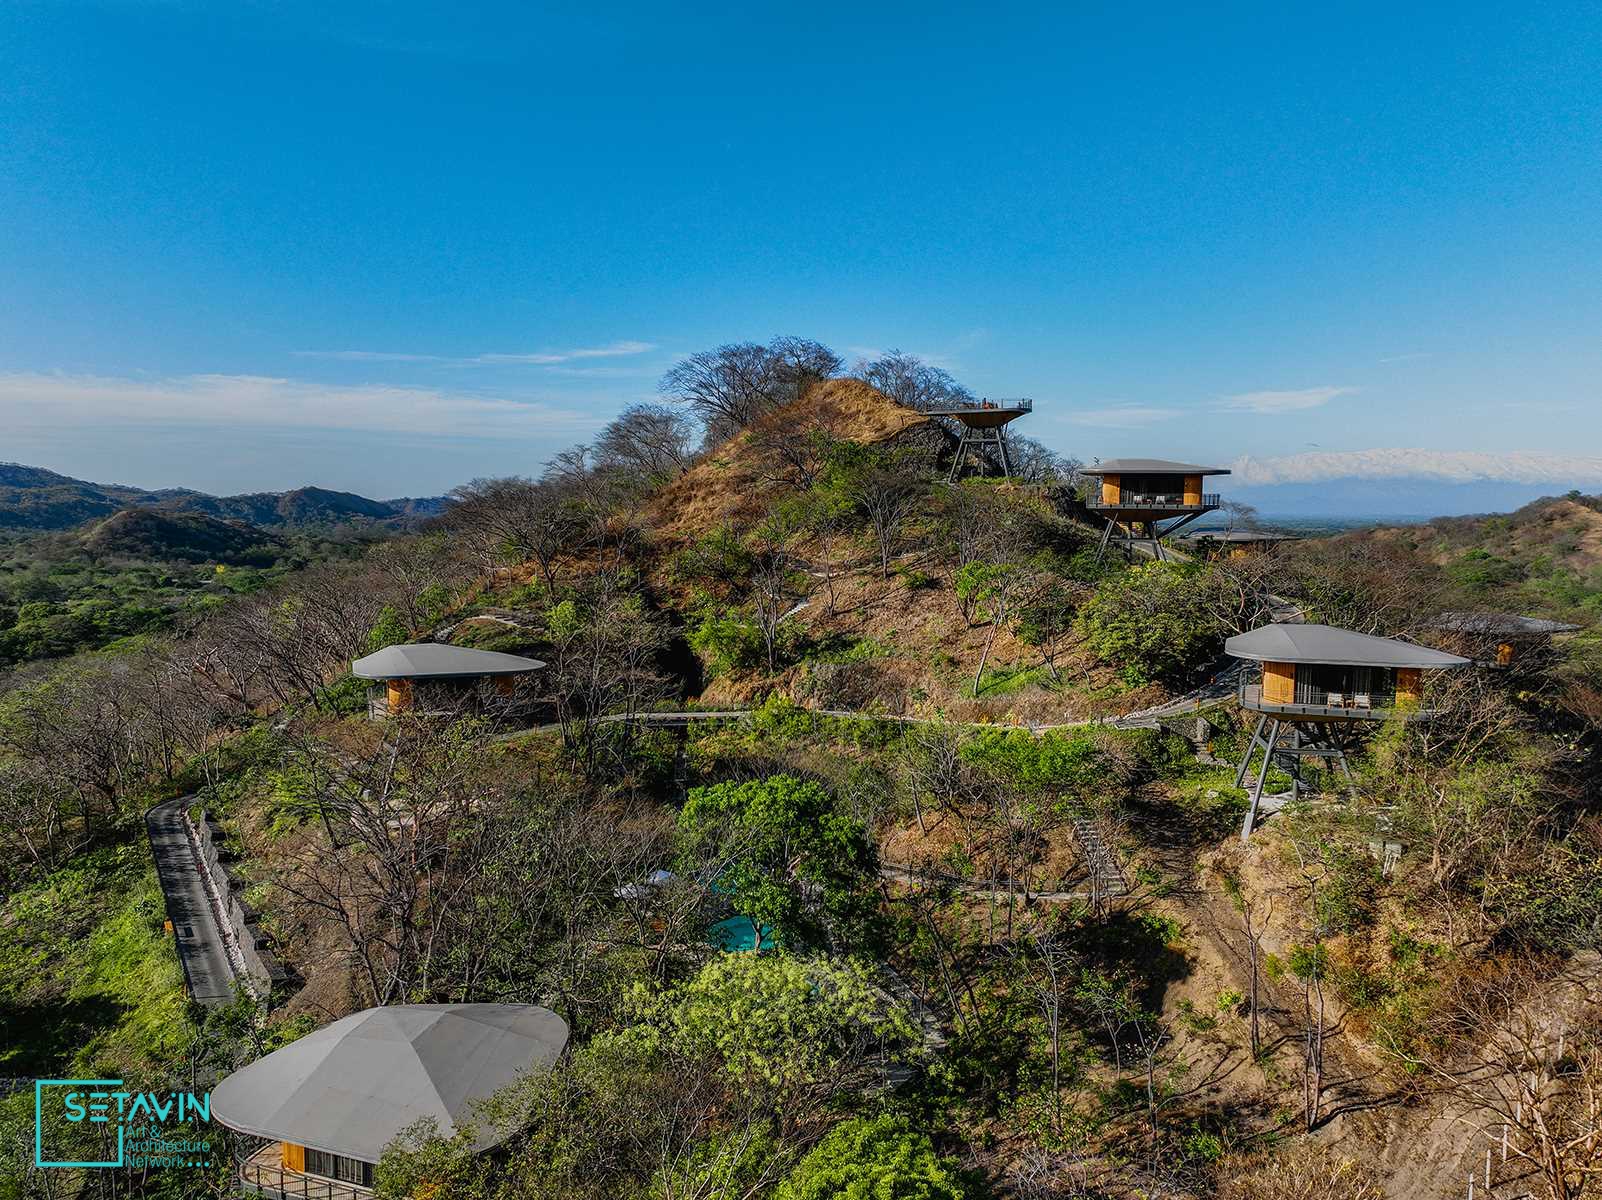 هتل Suitree Experience در کاستاریکا  شامل چندین خانه درختی